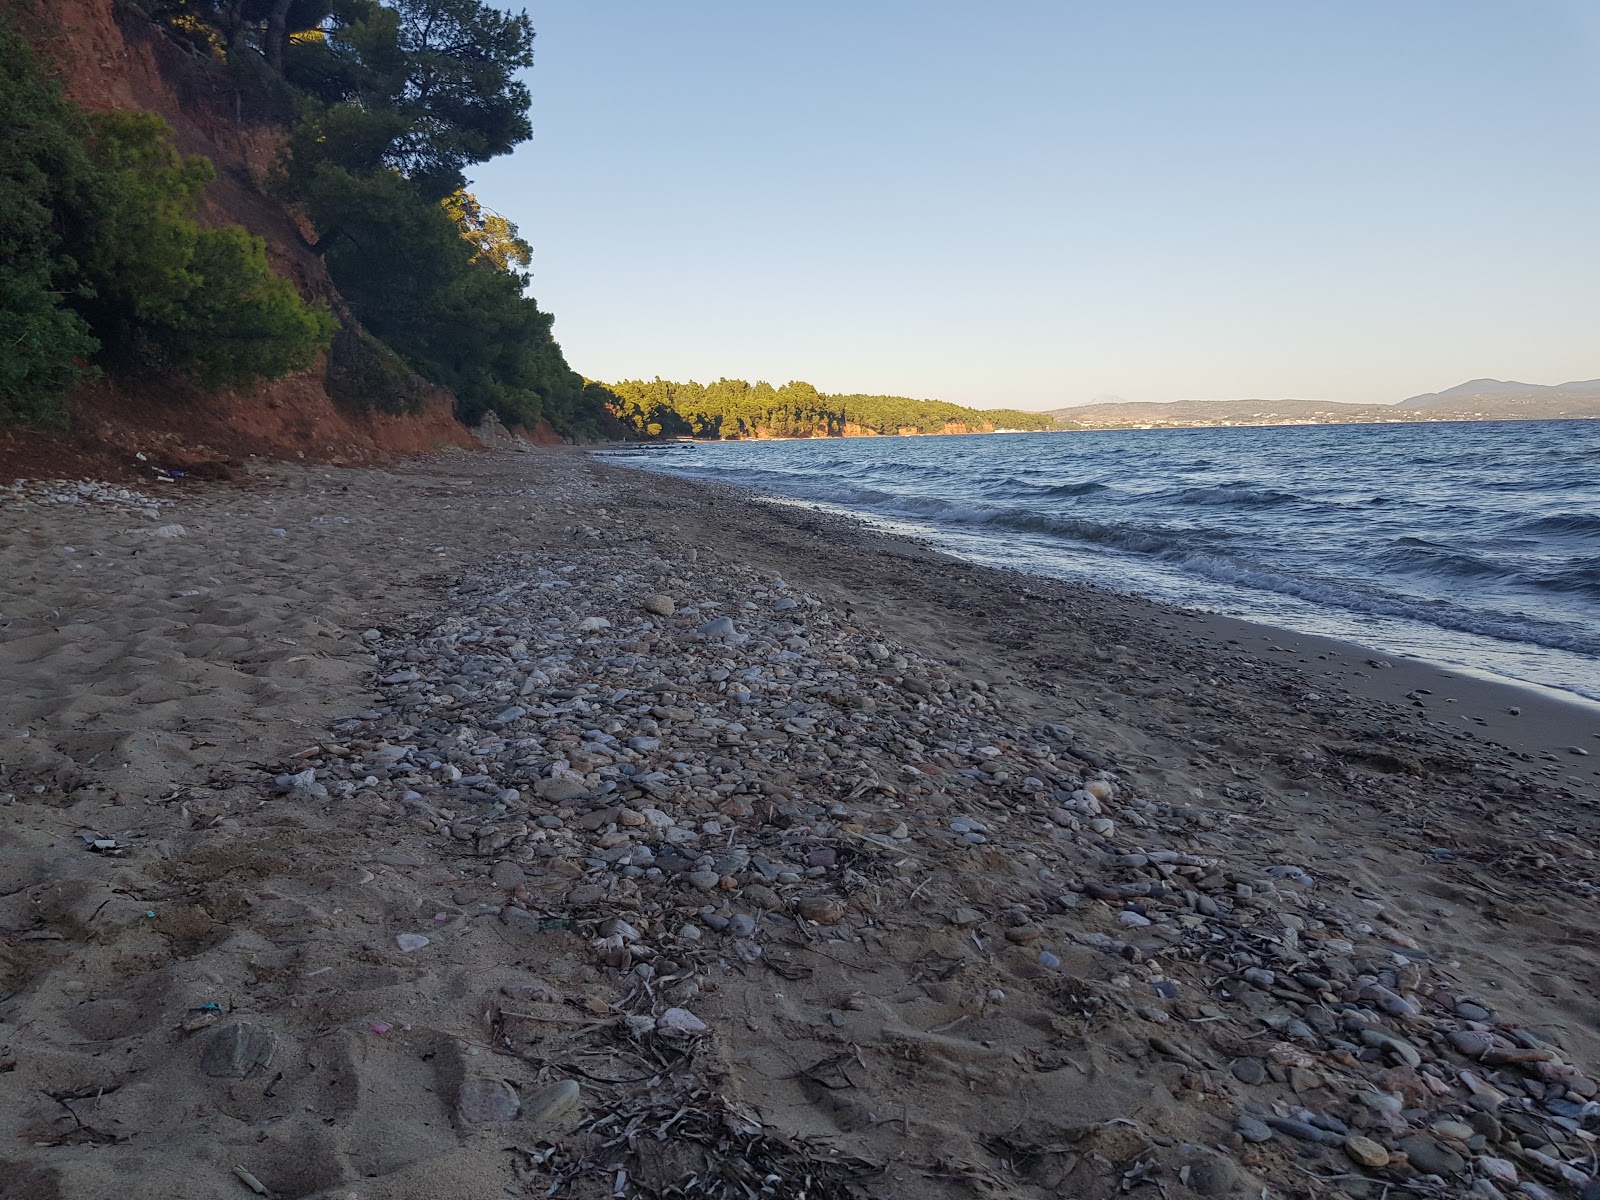 Fotografie cu Metamorfossi beach cu nivelul de curățenie scăzut